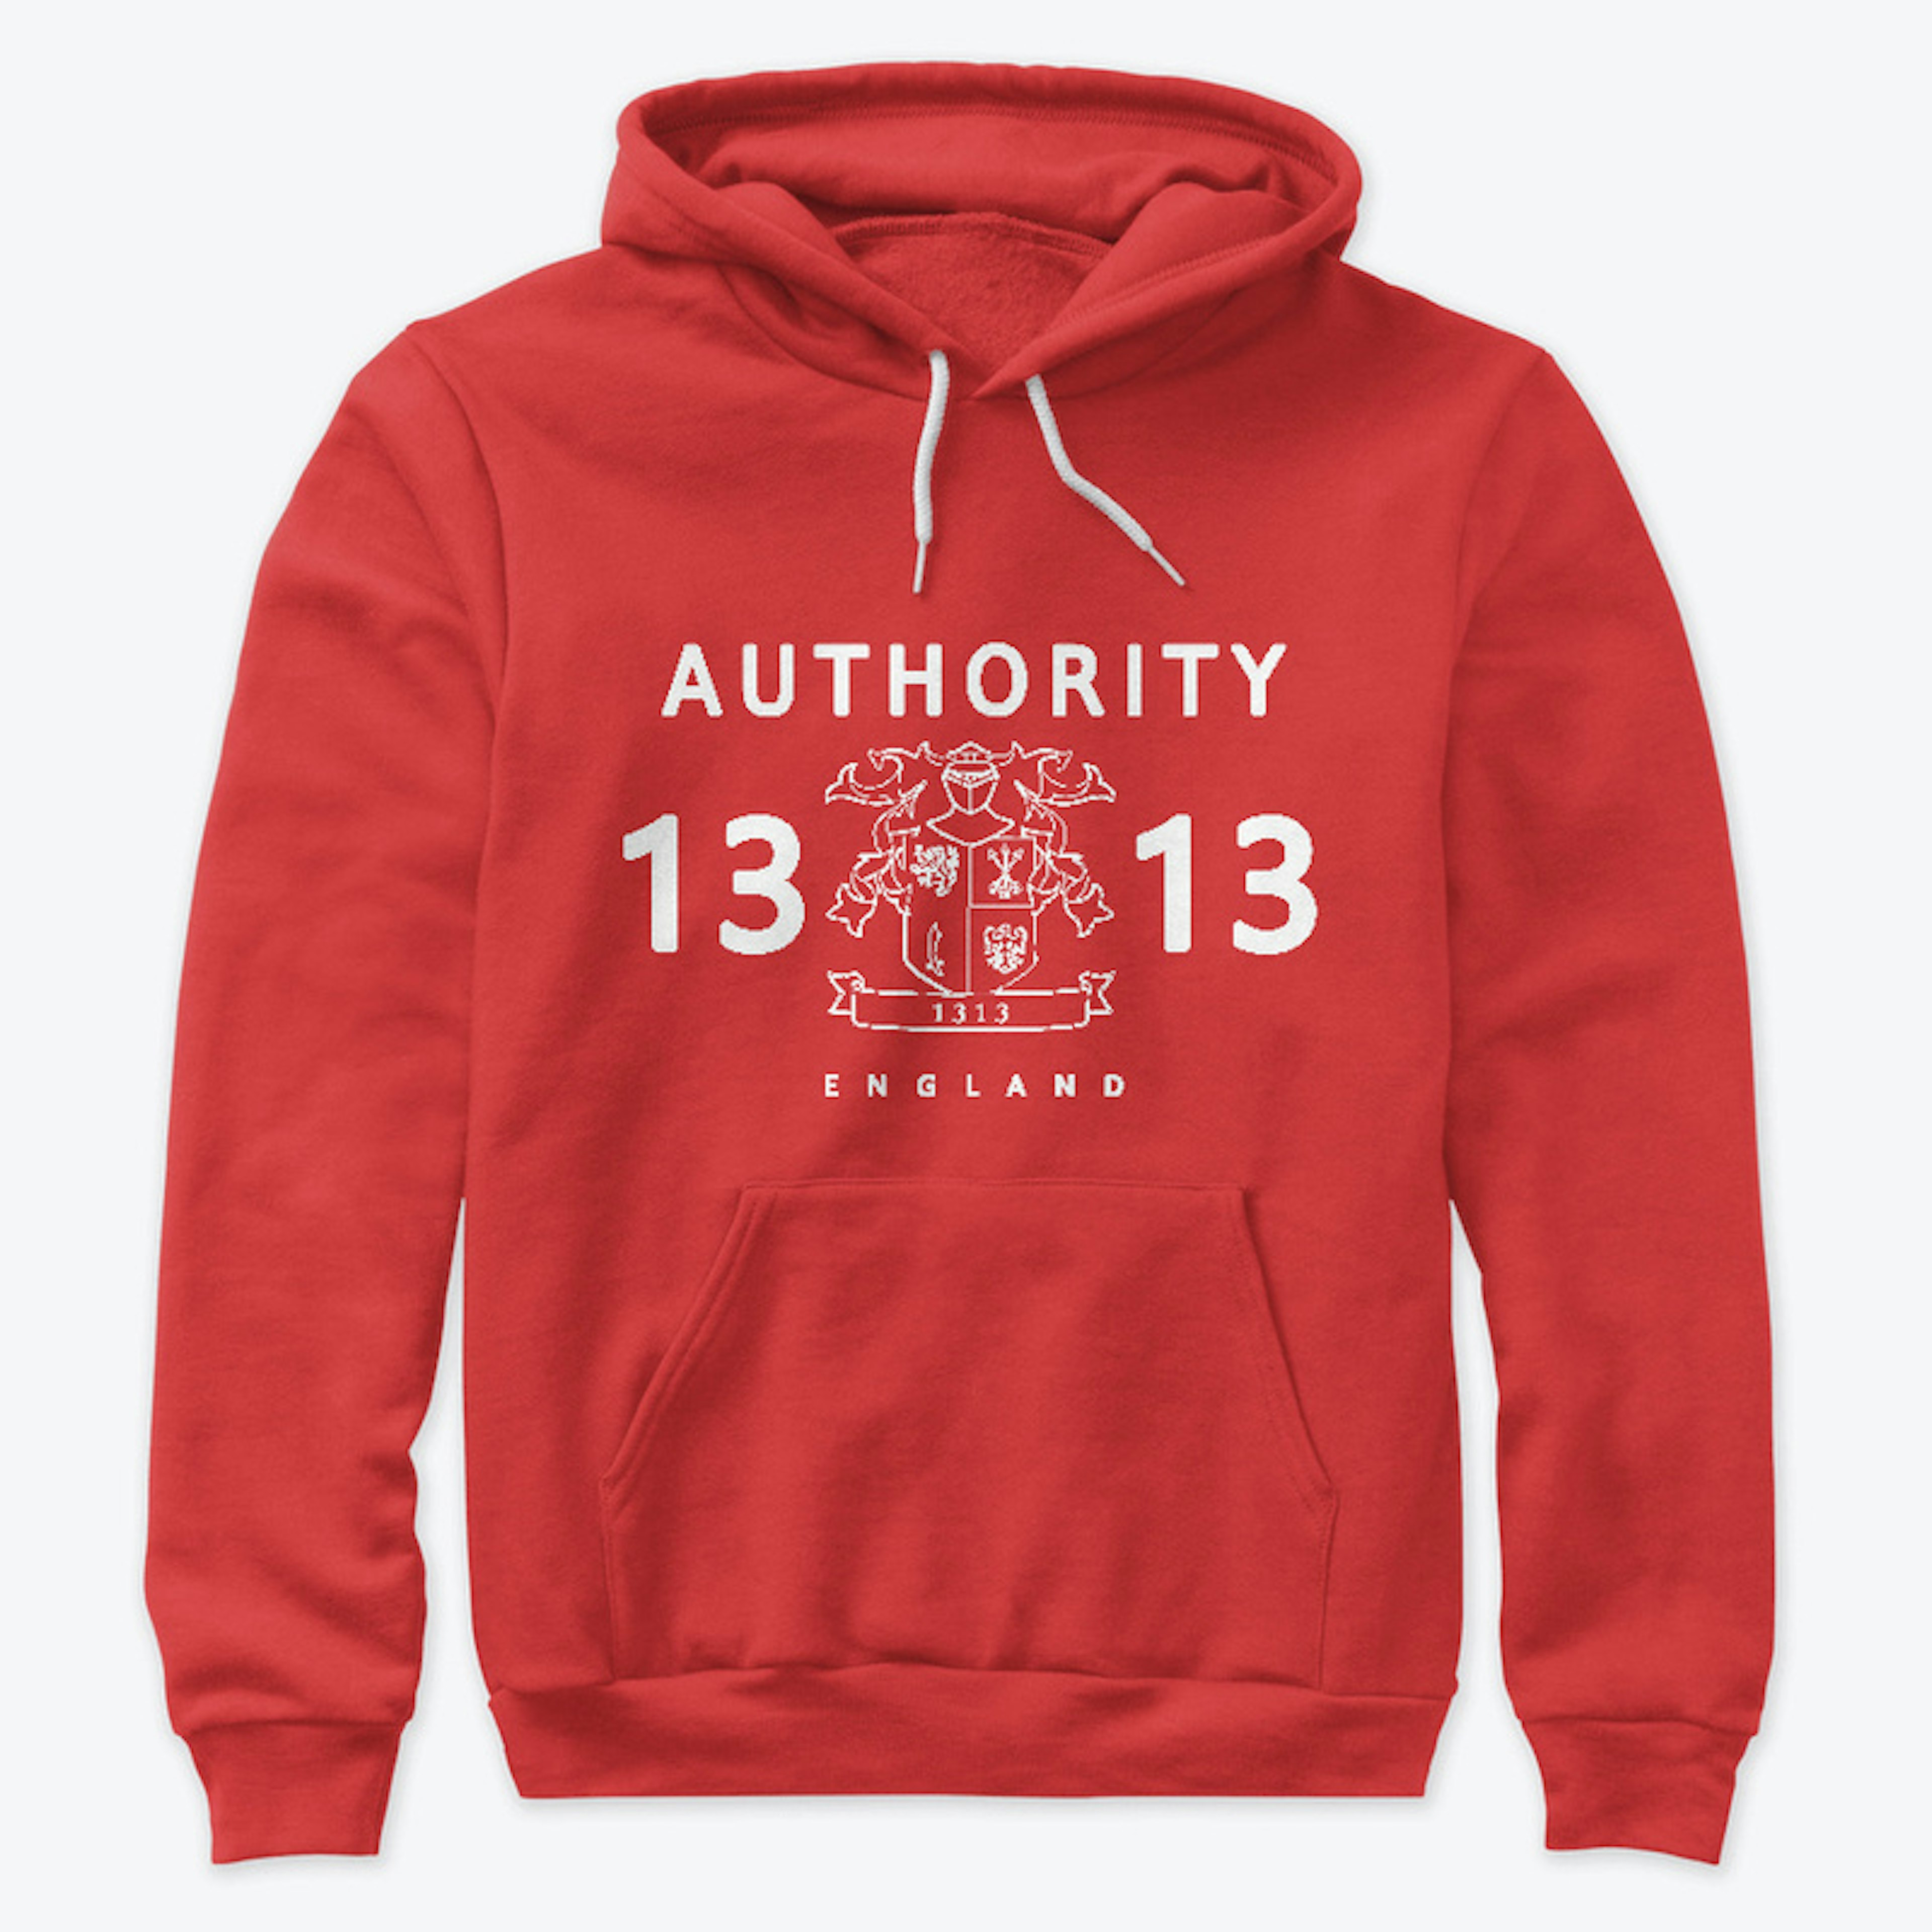 Authority 13 Classic logo